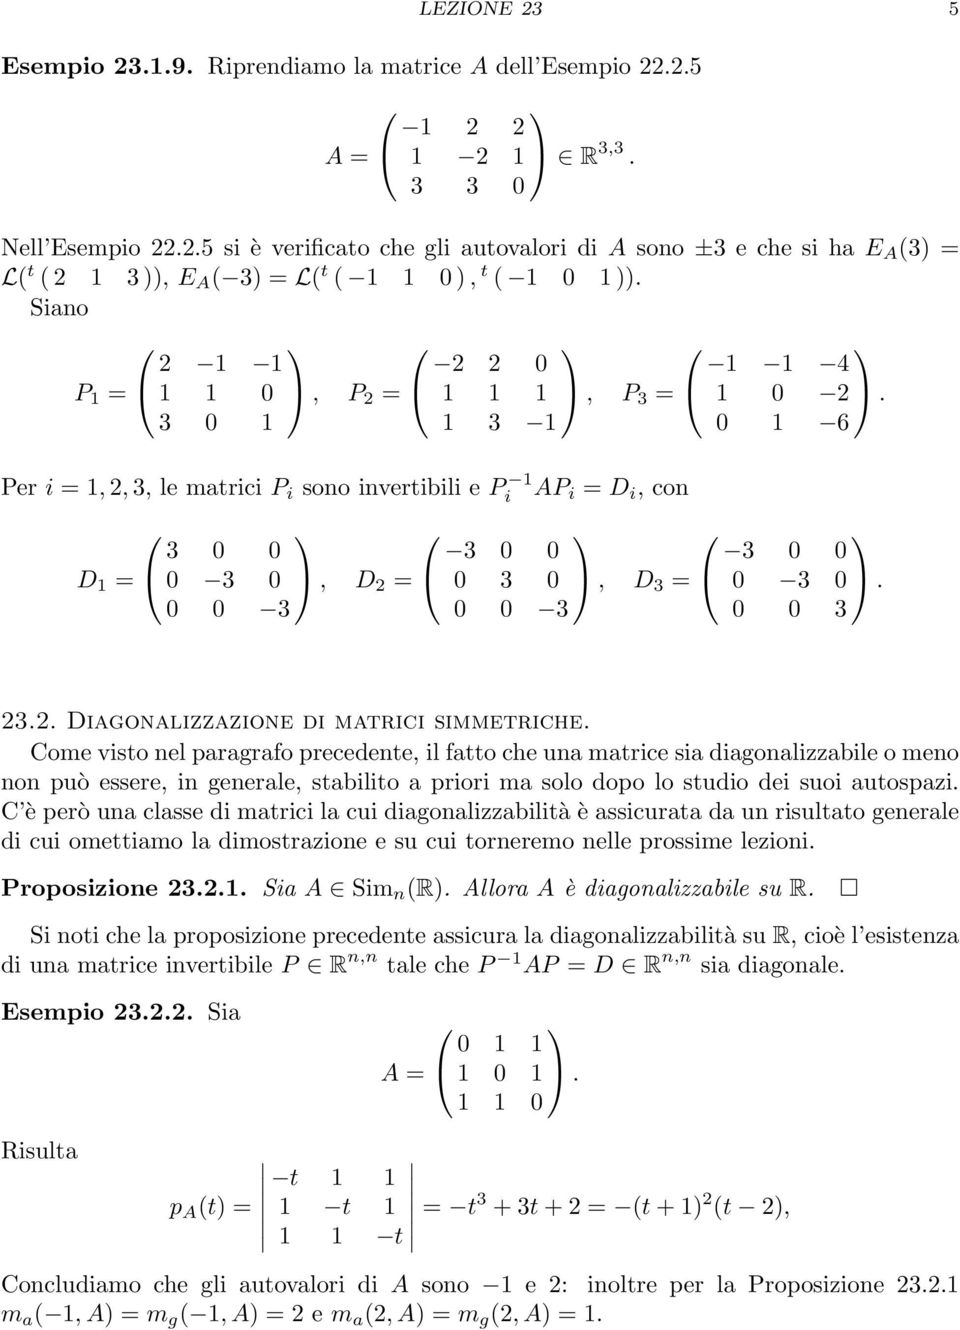 1 = 3 0 0 0 3 0, D 2 = 0 0 3 3 0 0 0 3 0 0 0 3, D 3 = 3 0 0 0 3 0 0 0 3 232 Diagonalizzazione di matrici simmetriche Come visto nel paragrafo precedente, il fatto che una matrice sia diagonalizzabile